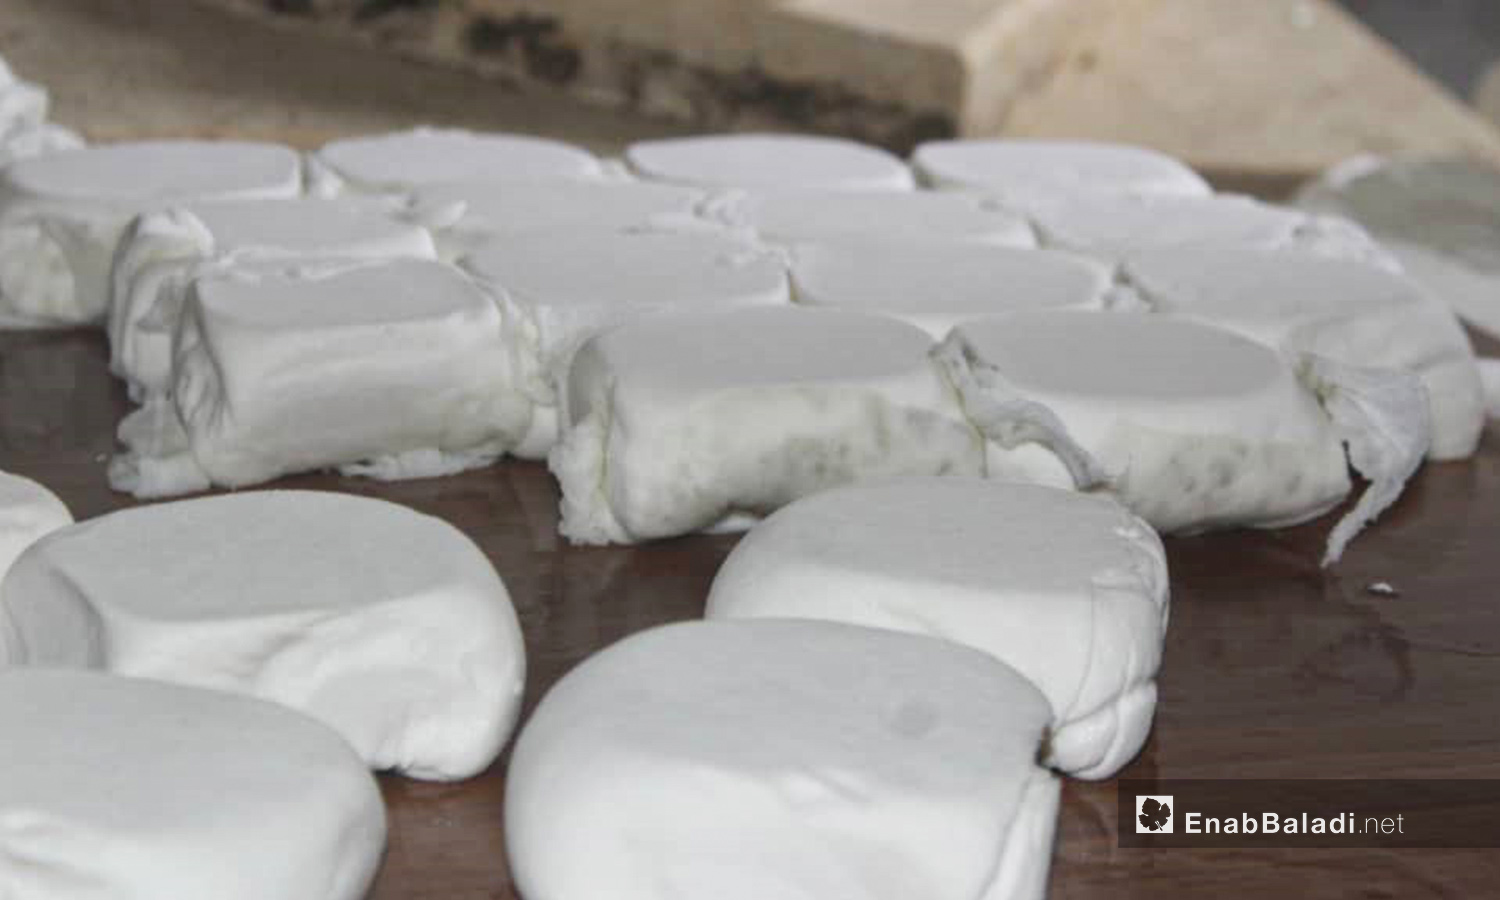 مرحلة إخراج الجبن من المكبس في عملية صناعة الجبن ببلدة الدانا في ريف إدلب - 4 حزيران 2020 (عنب بلدي/شادية تعتاع)